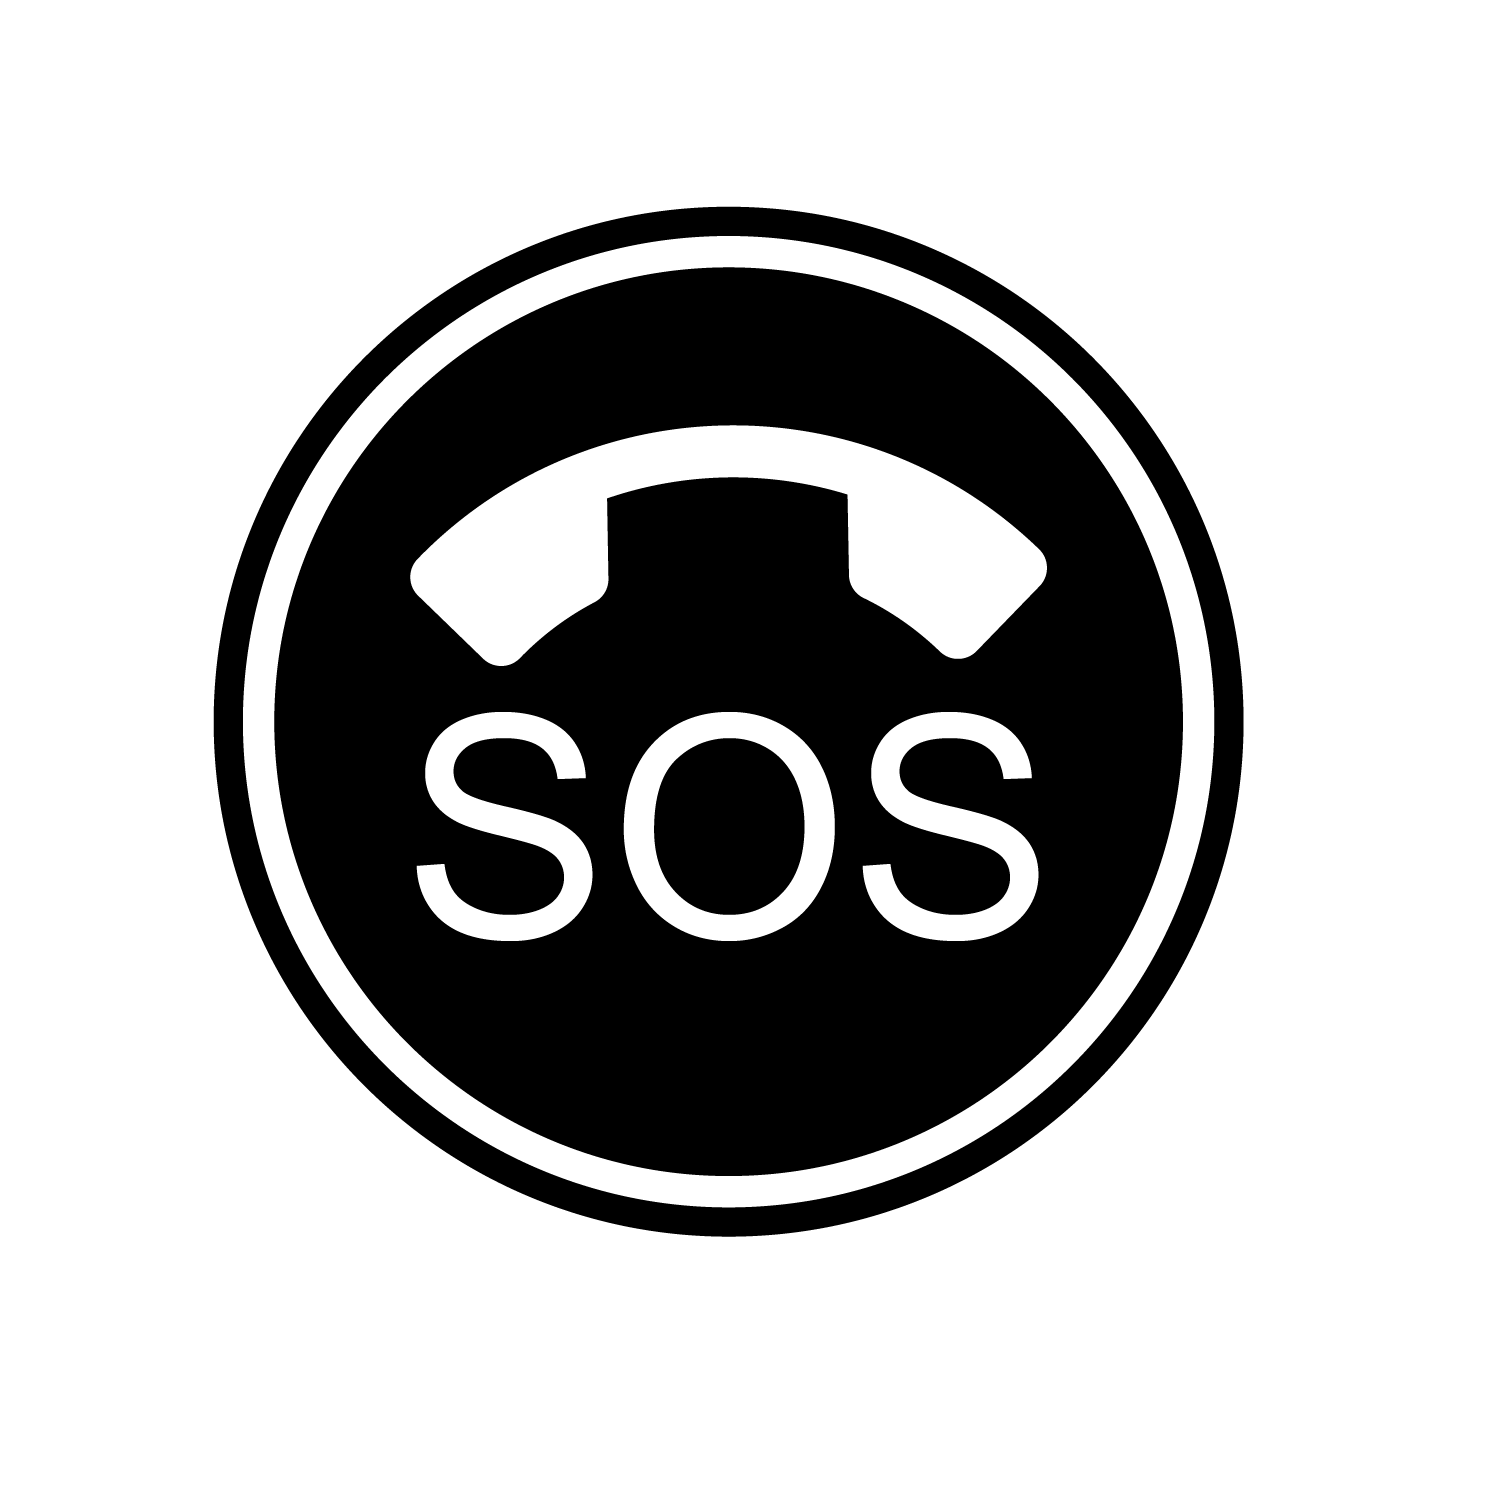 Sox SOS2 01